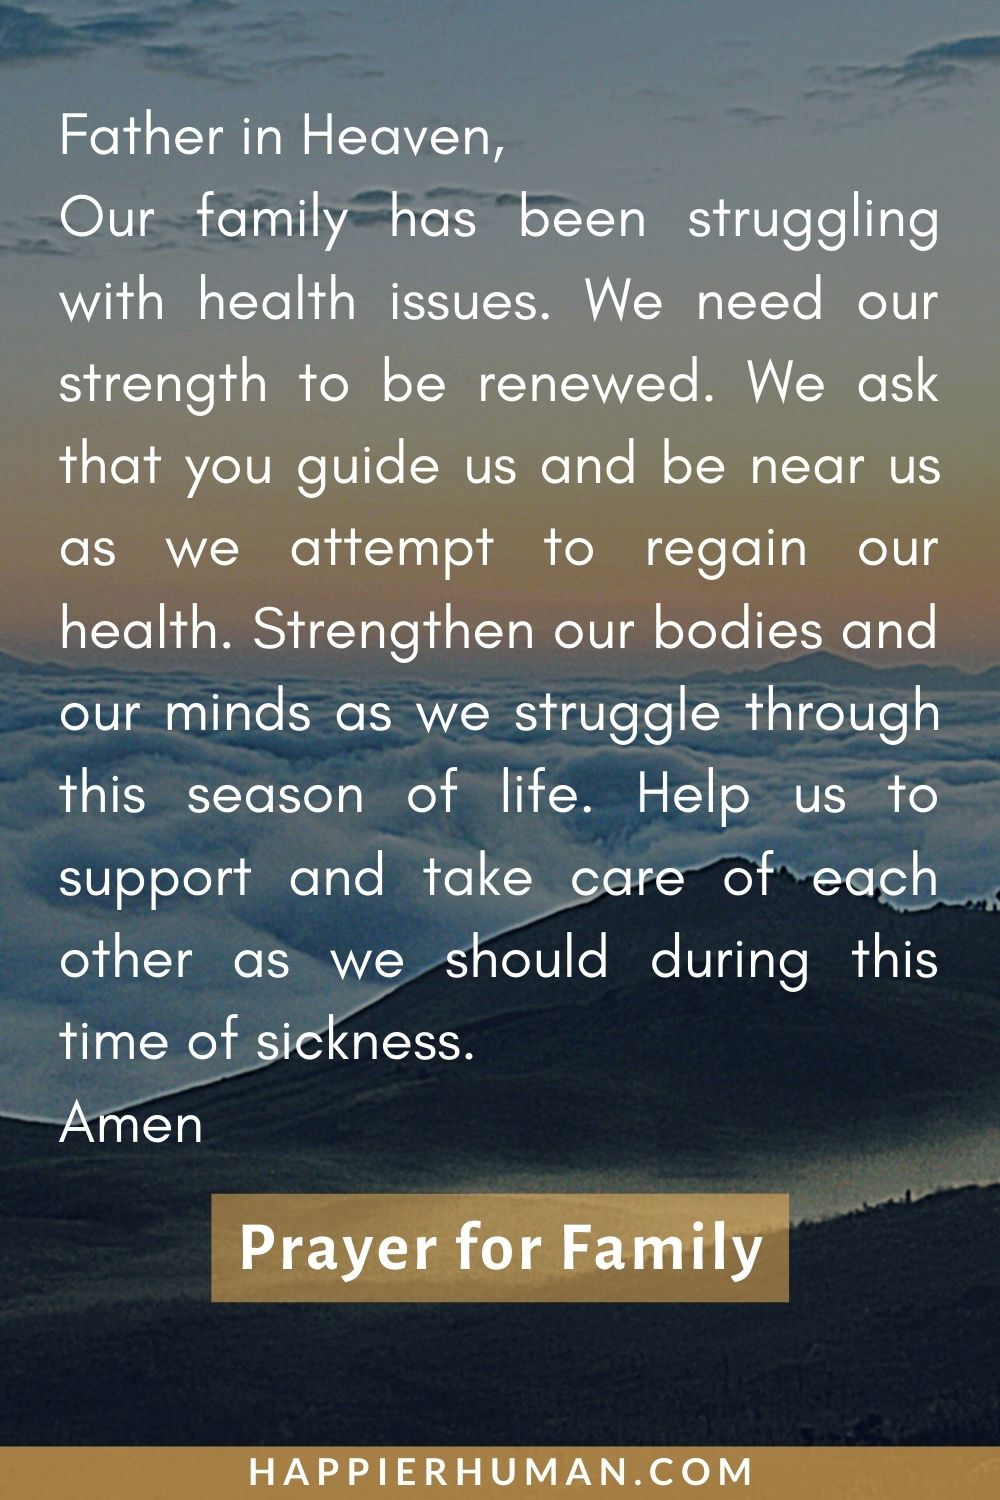 Family Prayer Images